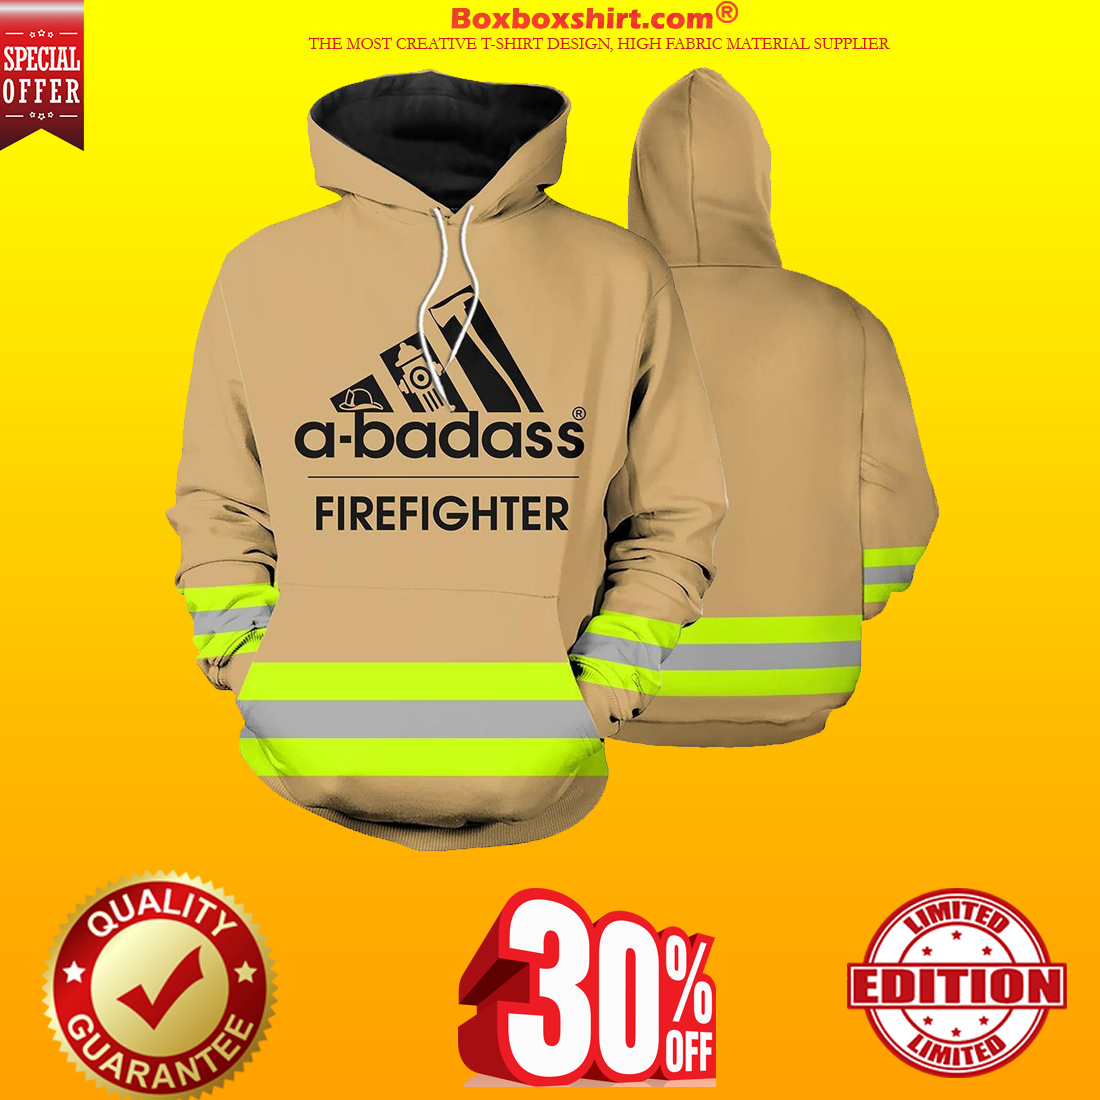 Firefighter skull fire dept 3d hot shirt